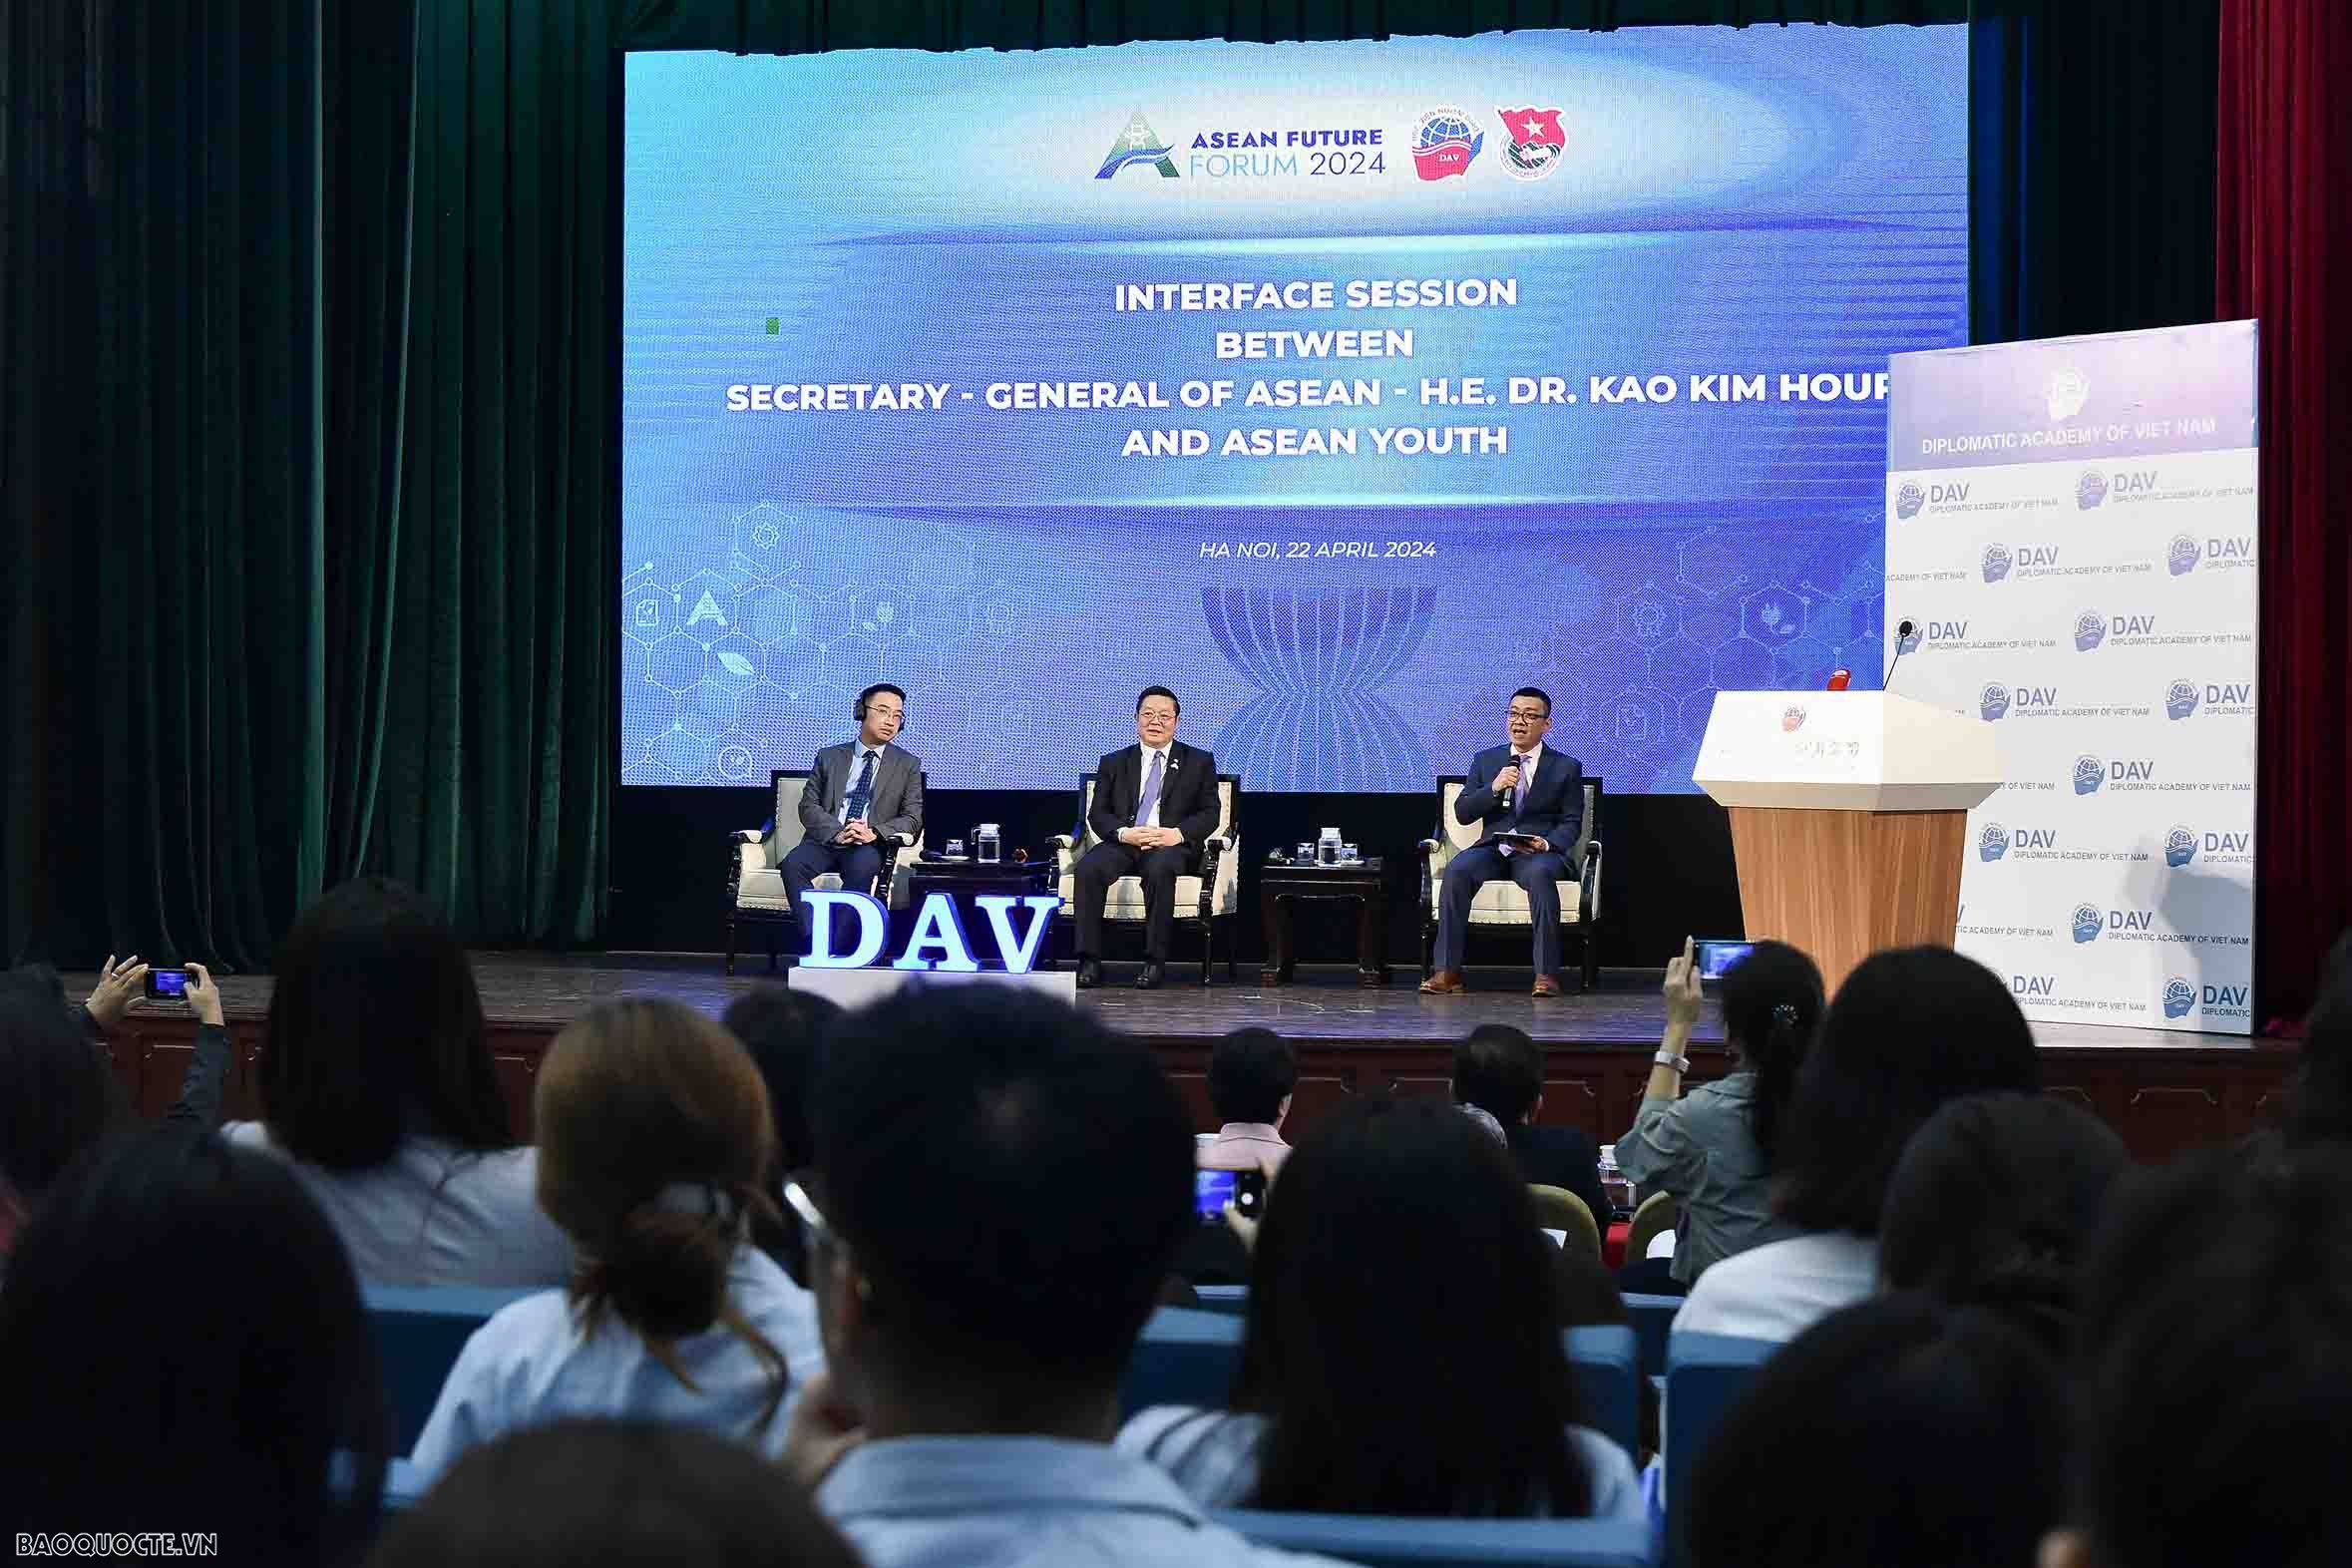 Khai mạc Diễn đàn Tương lai ASEAN lần đầu tiên tại Việt Nam sáng nay (23/4)